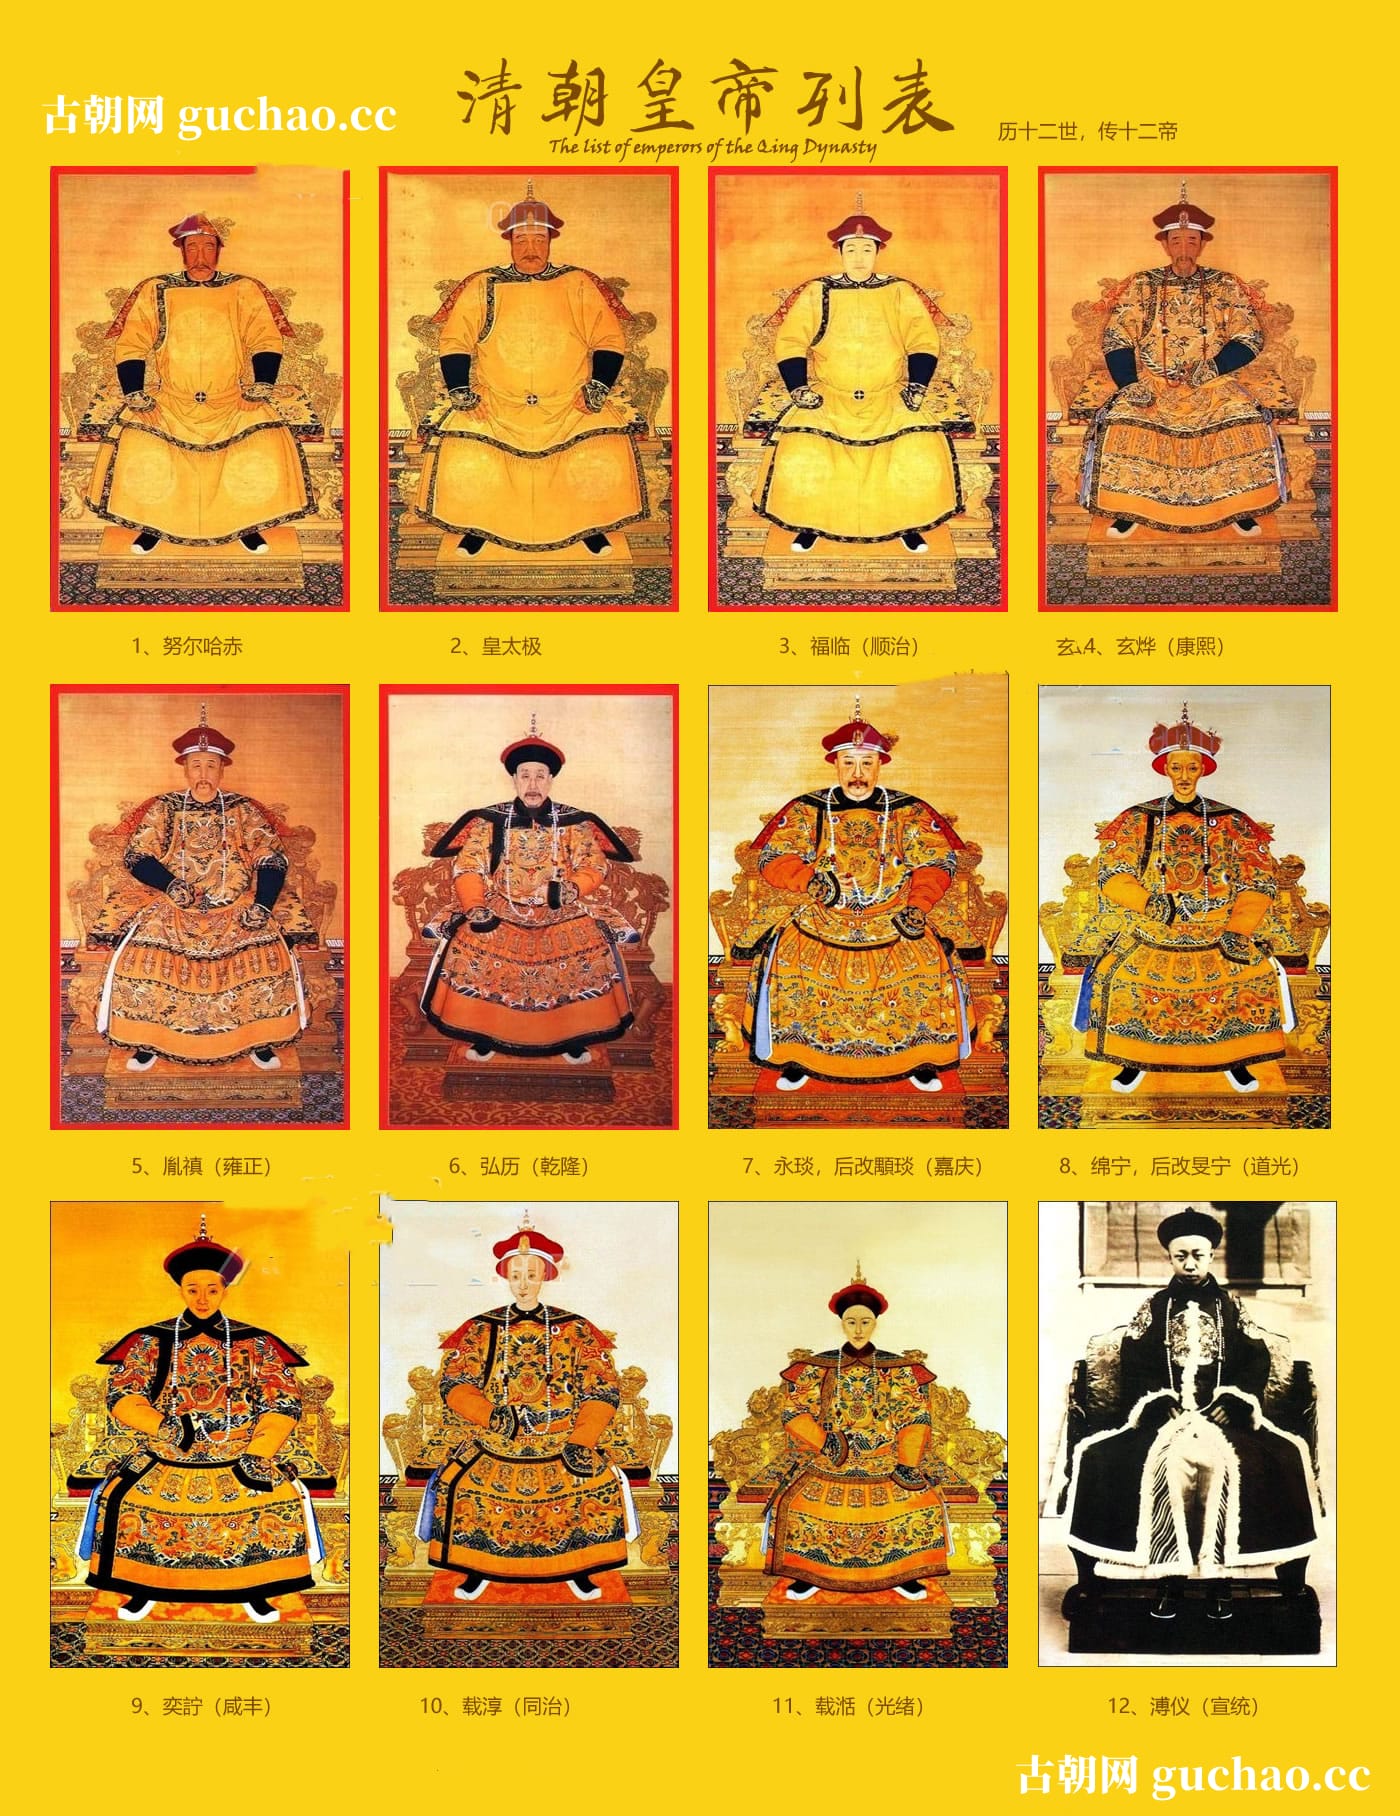 清朝皇帝大全 清朝皇帝个人资料介绍 清朝皇帝图像介绍